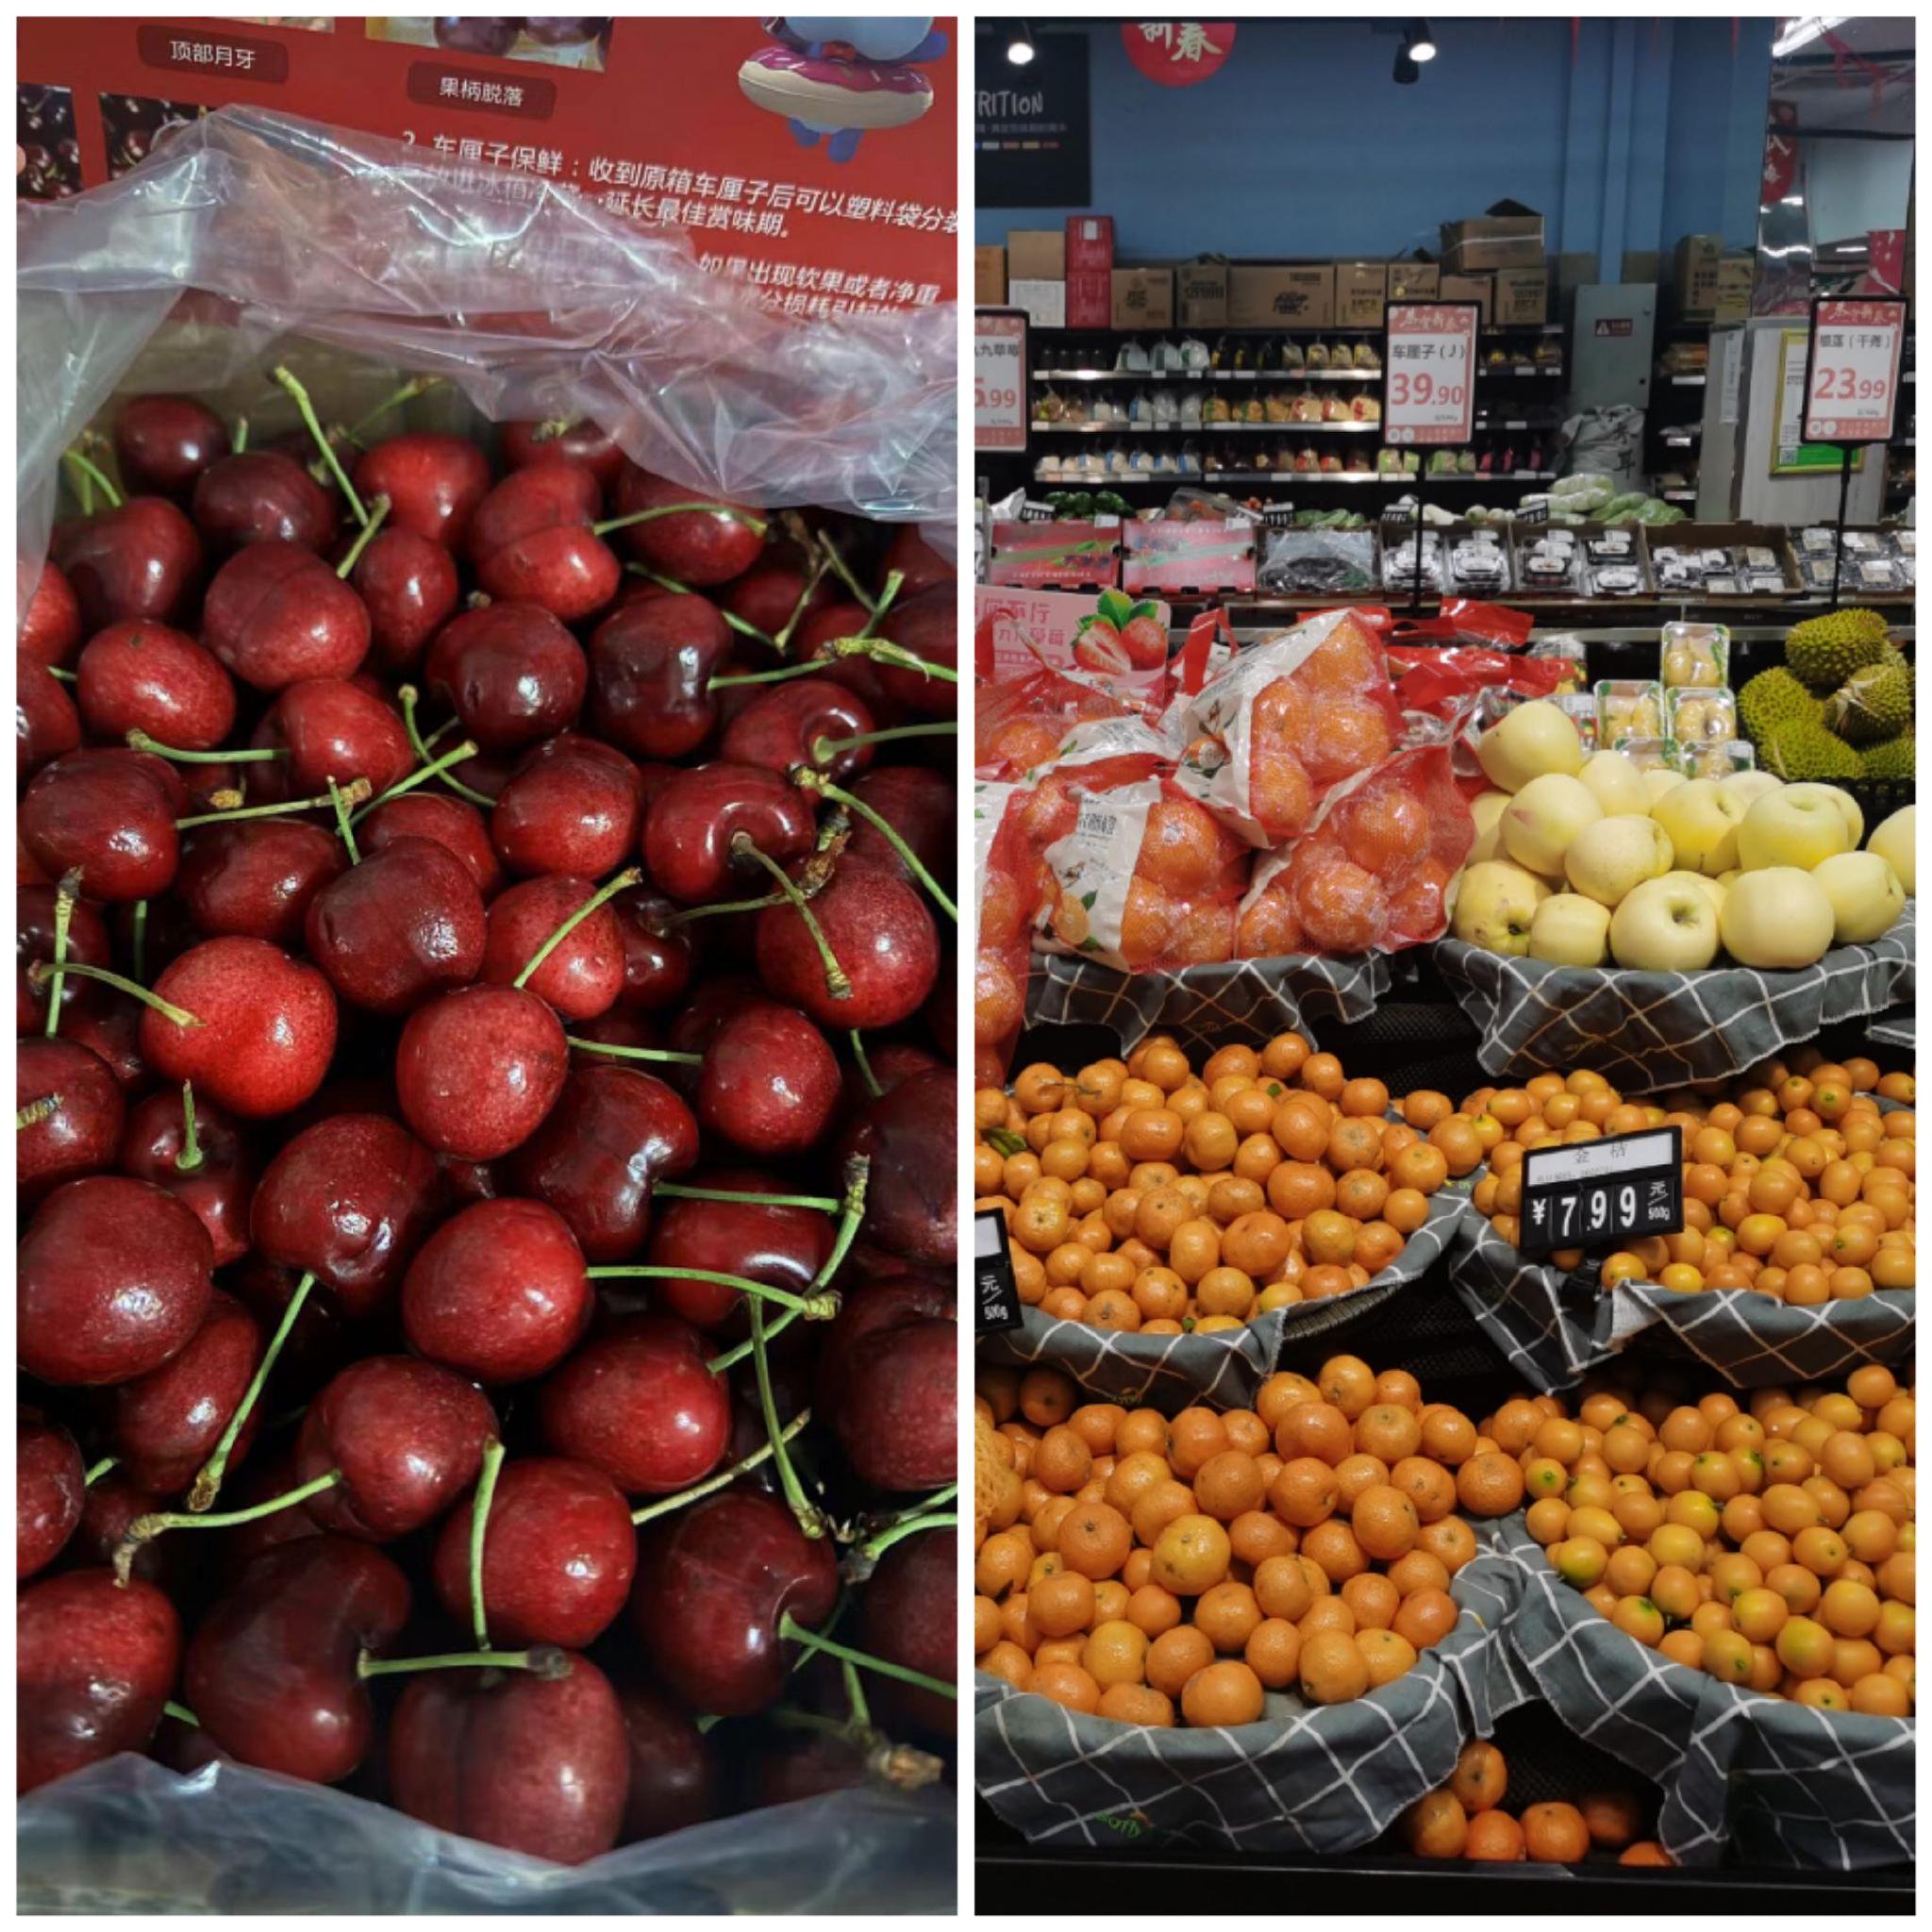 北京市朝陽區首航超市鬆榆里店的水果。 新京報記者 劉歡 攝